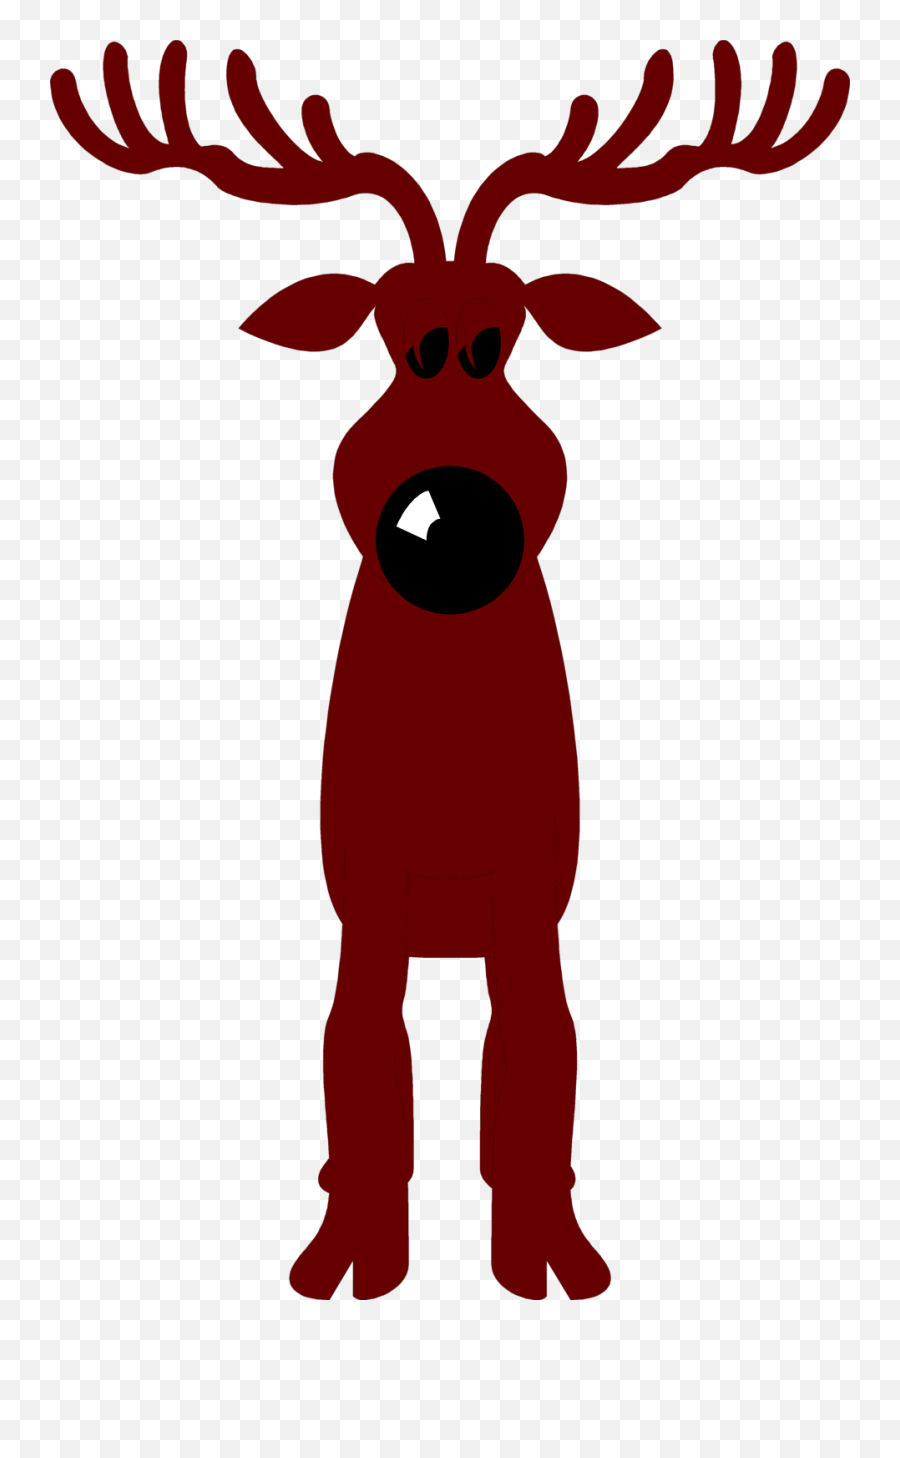 Cartoon Reindeers - Clipart Best Reindeer Simple Rudolph Reindeer Head Christmas Clipart Emoji,Reindeer Clipart